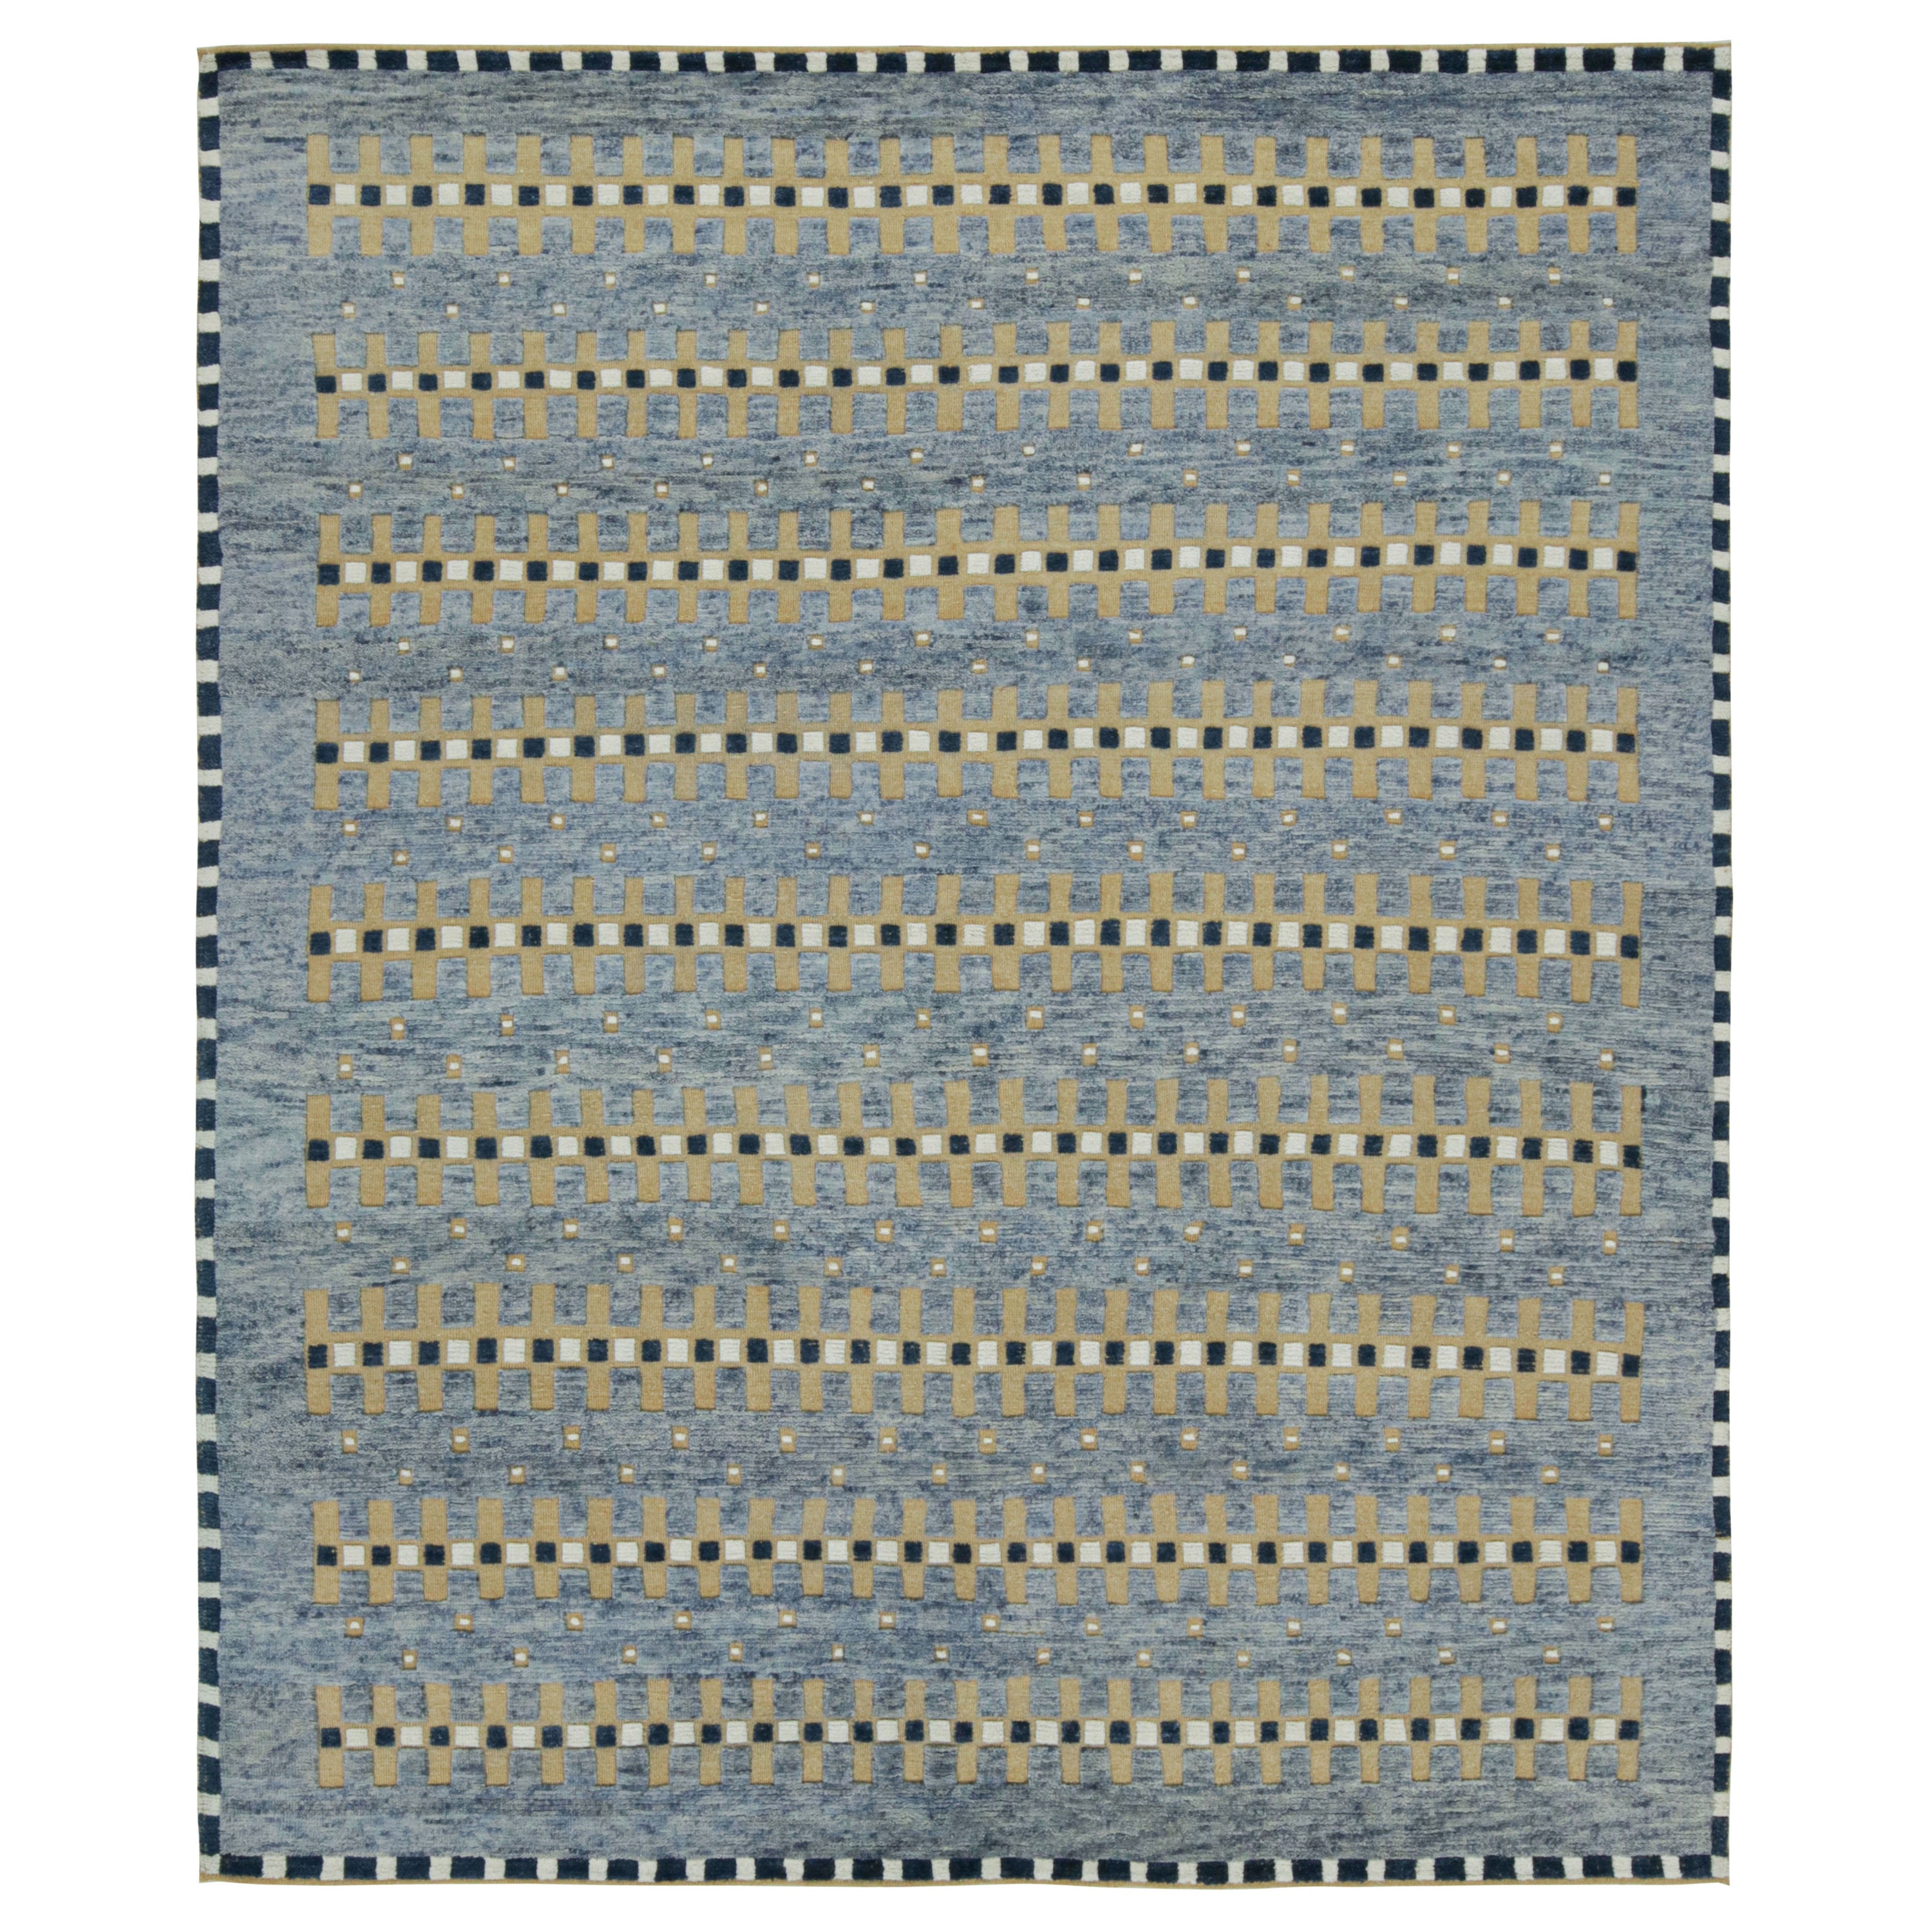 Rug & Kilim's Teppich im skandinavischen Stil in Blau, Beige-Braun mit geometrischen Mustern